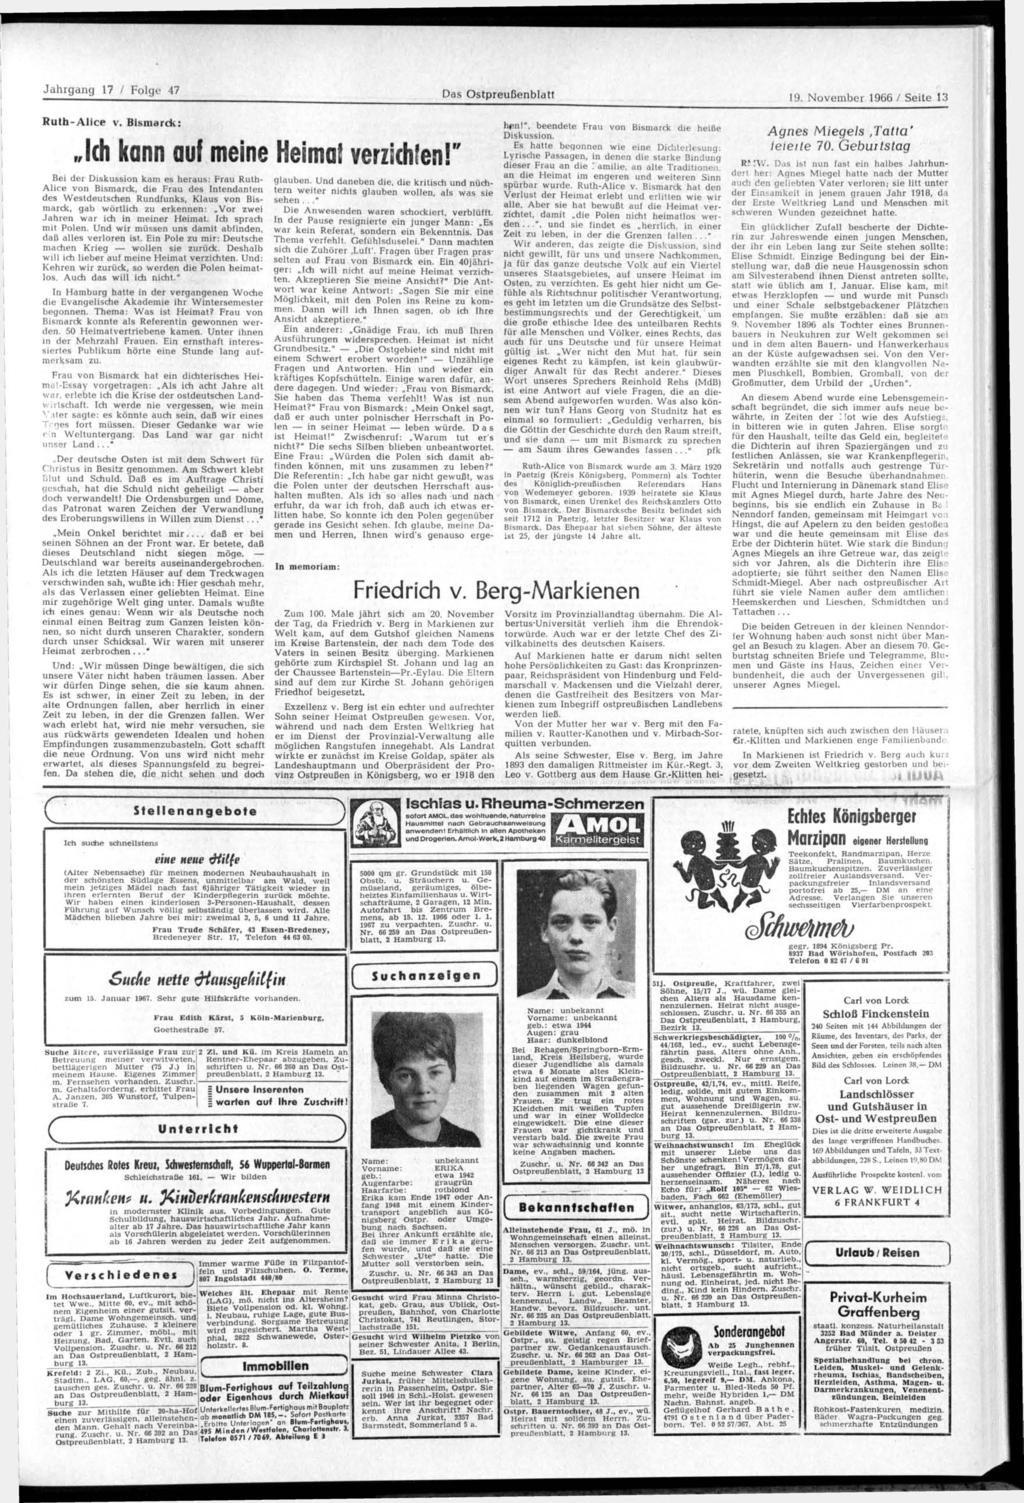 Das Ostpreußenblatt 19. November 1966 / Seite 13 Ruth-Alice v. Bismarck: Ich kann auf meine Heimat verzichten!